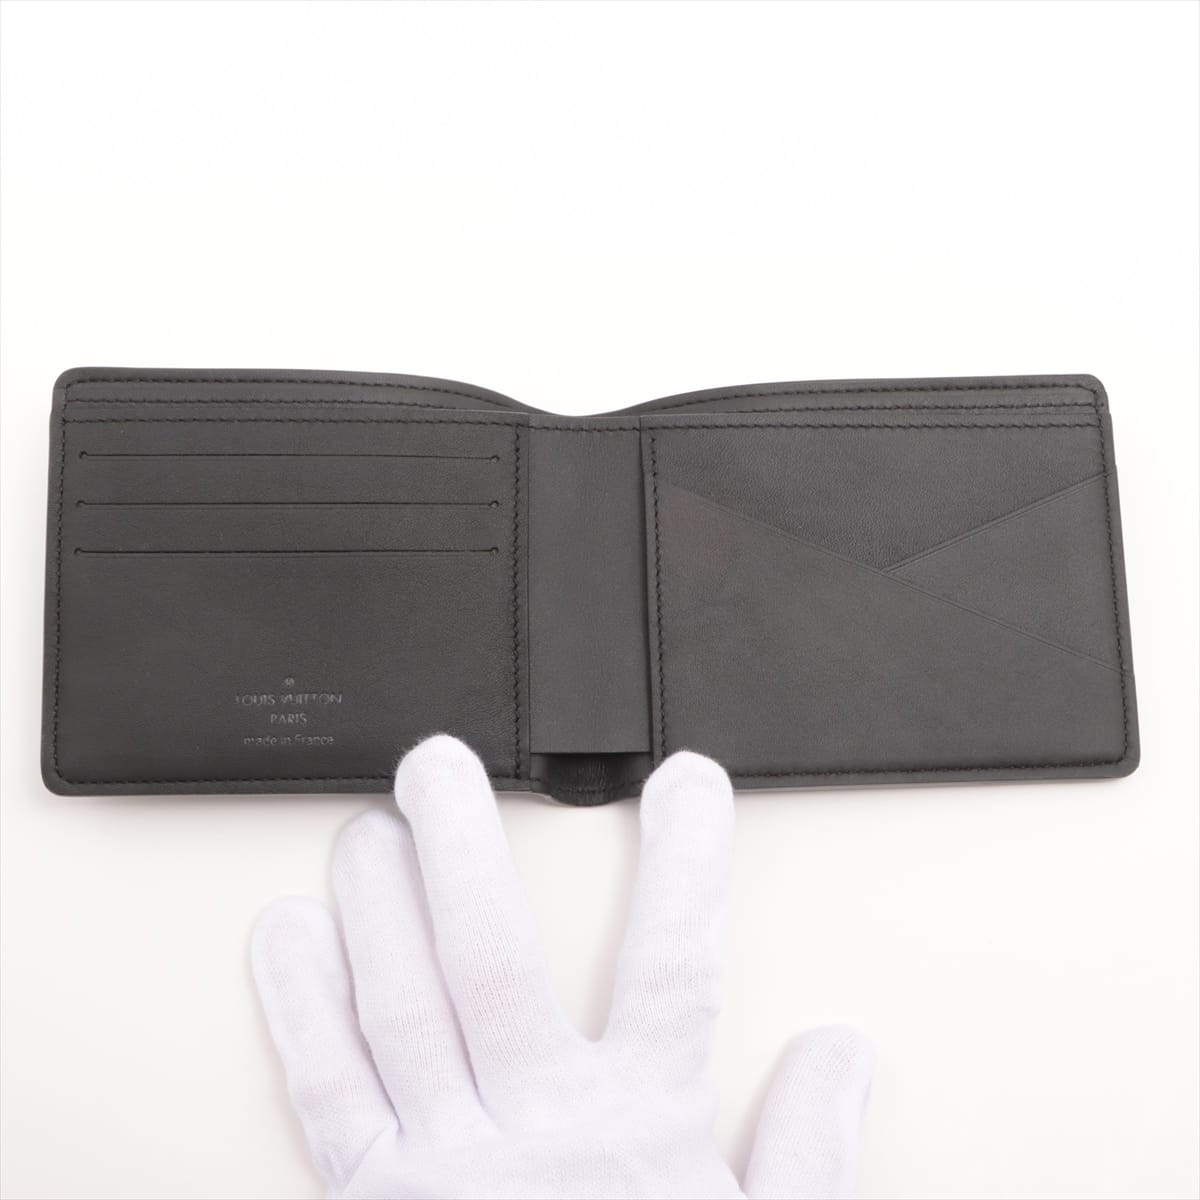 ルイヴィトン トリヨン ポルトフォイユ･ミュルティプル 型番不明 ブラック 財布